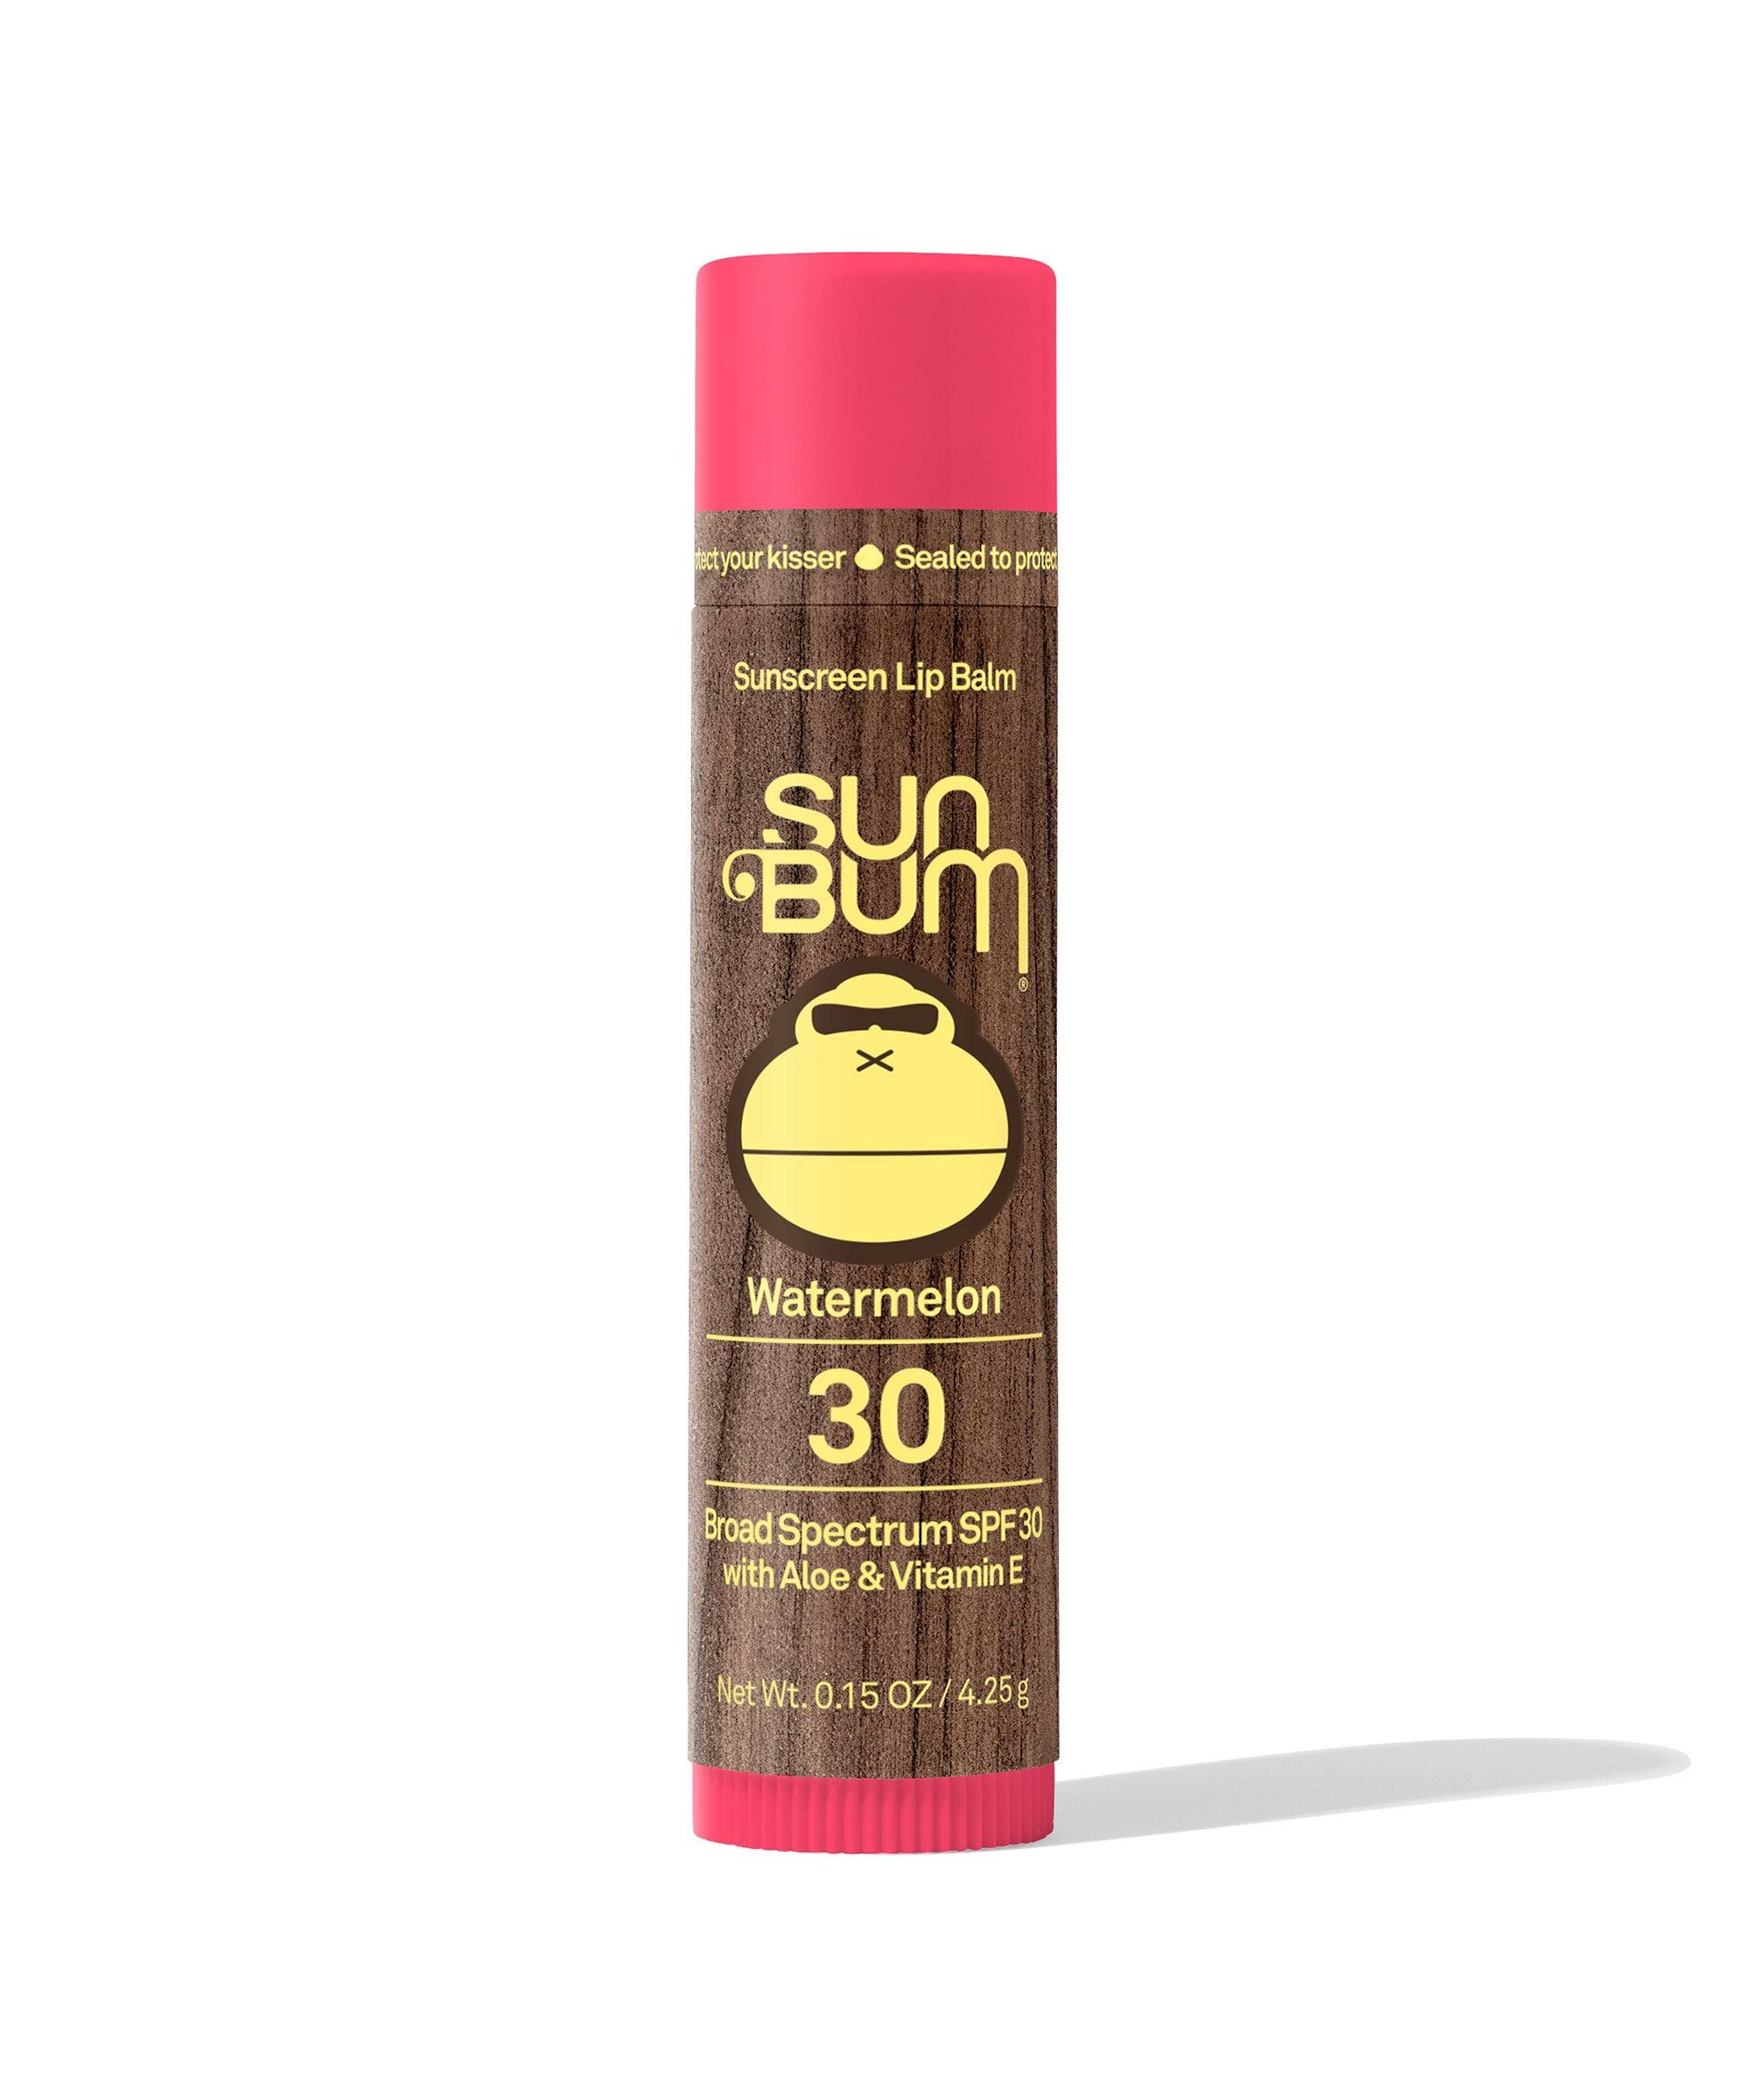 Sun Bum Sunscreen Lip Balm - Coconut, SPF 30, 0.15oz